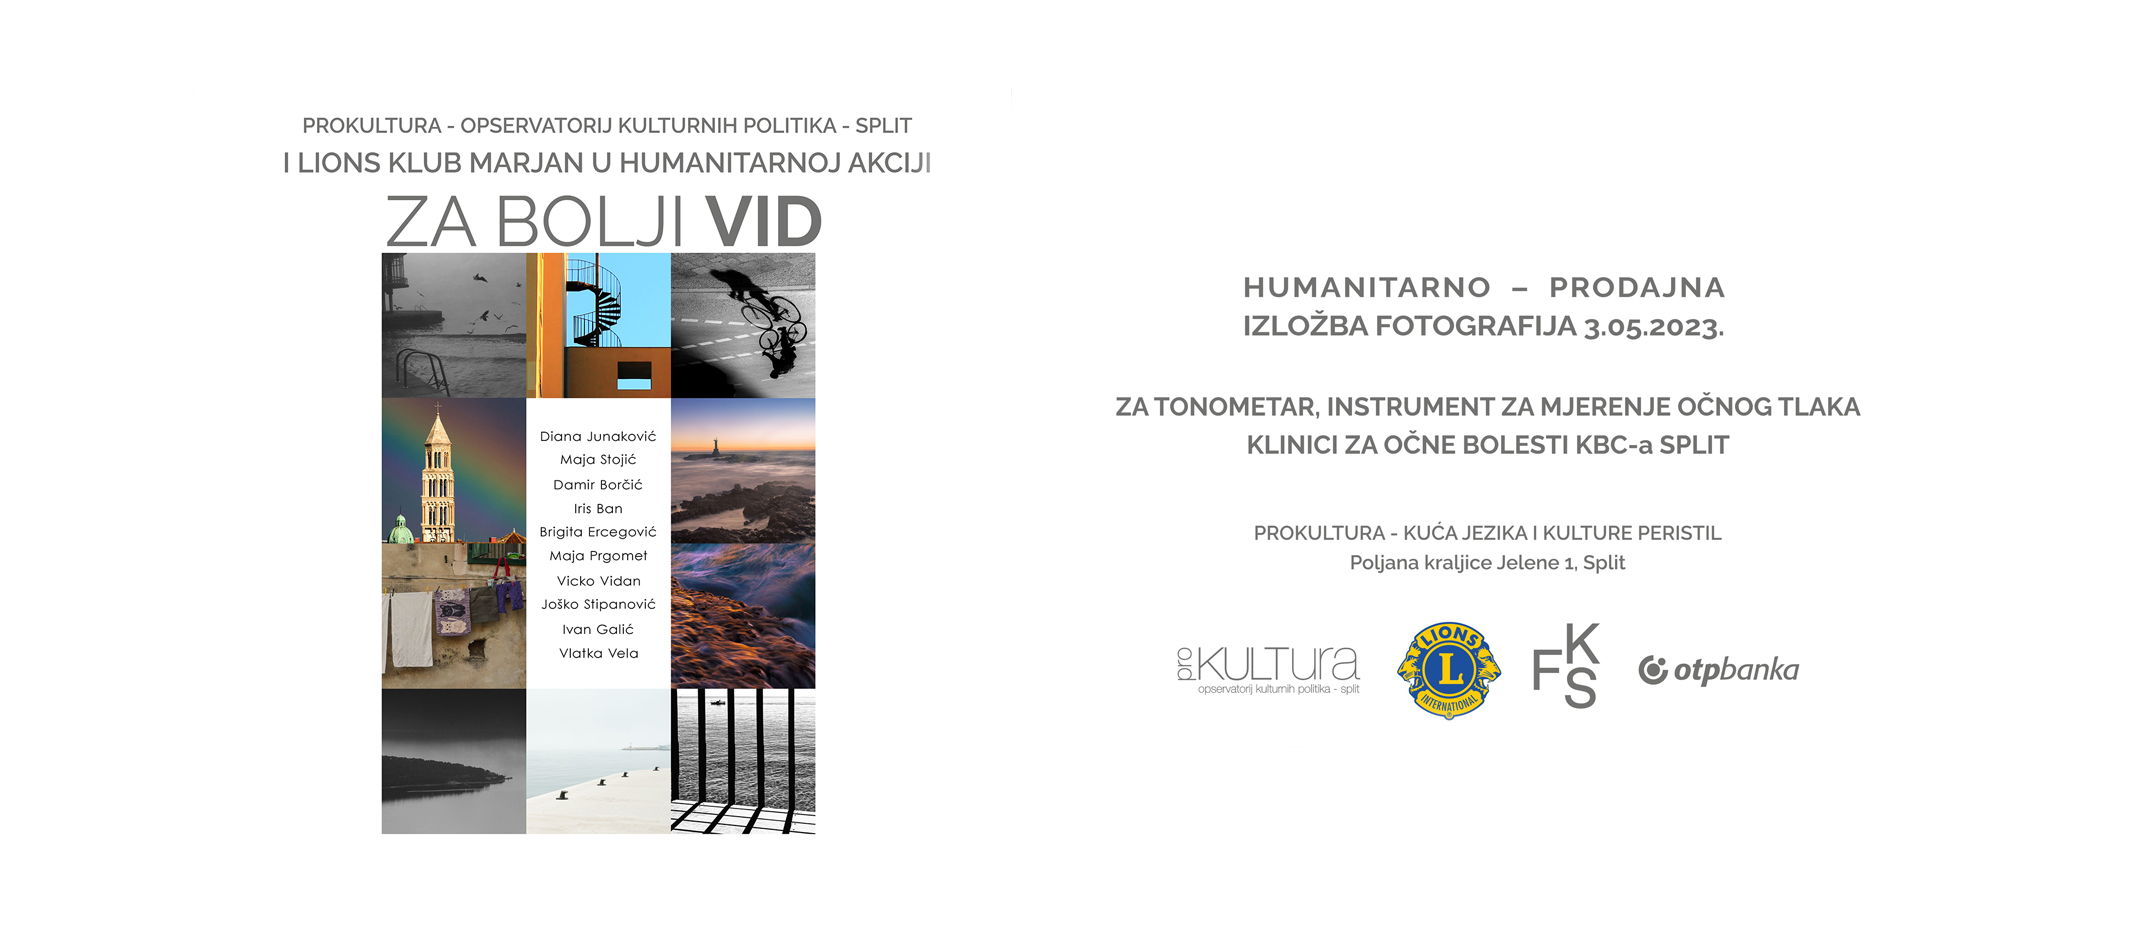 Članovi Fotokluba Split donilirali fotografije za humanitarnu akciju “ZA BOLJI VID”